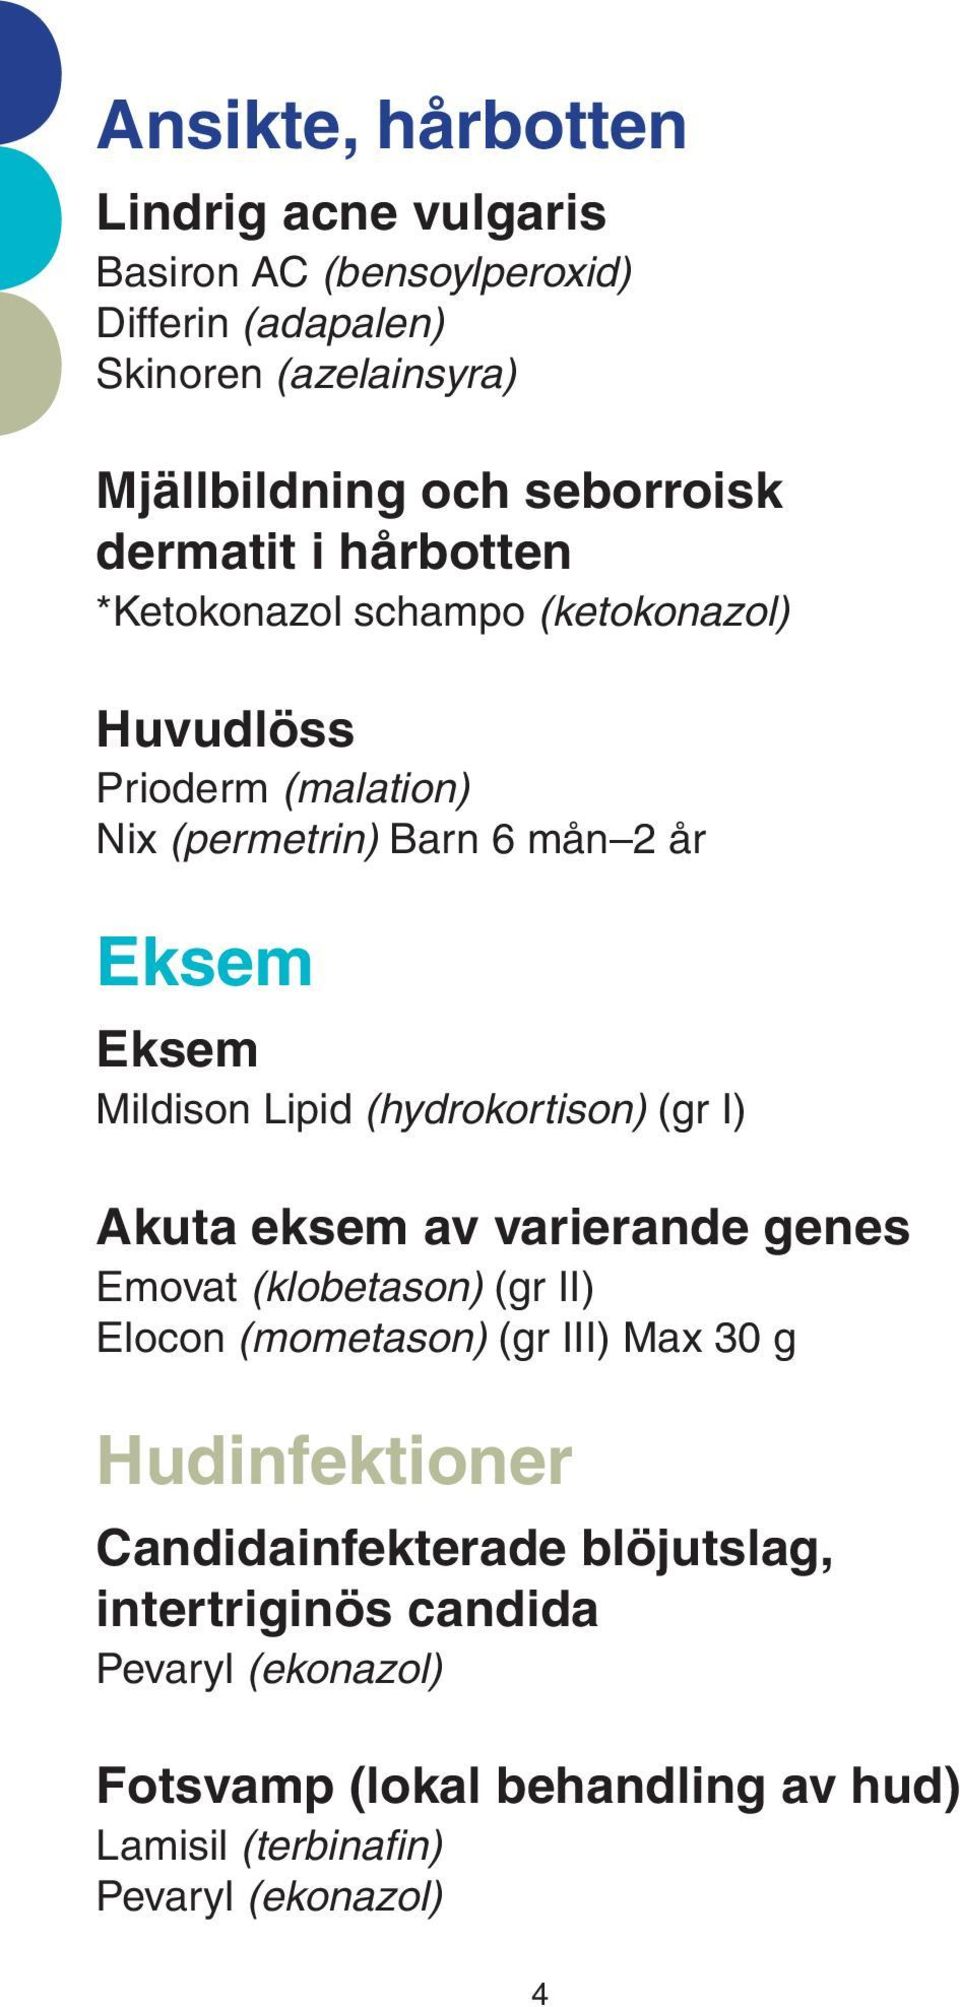 Lipid (hydrokortison) (gr I) Akuta eksem av varierande genes Emovat (klobetason) (gr II) Elocon (mometason) (gr III) Max 30 g Hudinfektioner